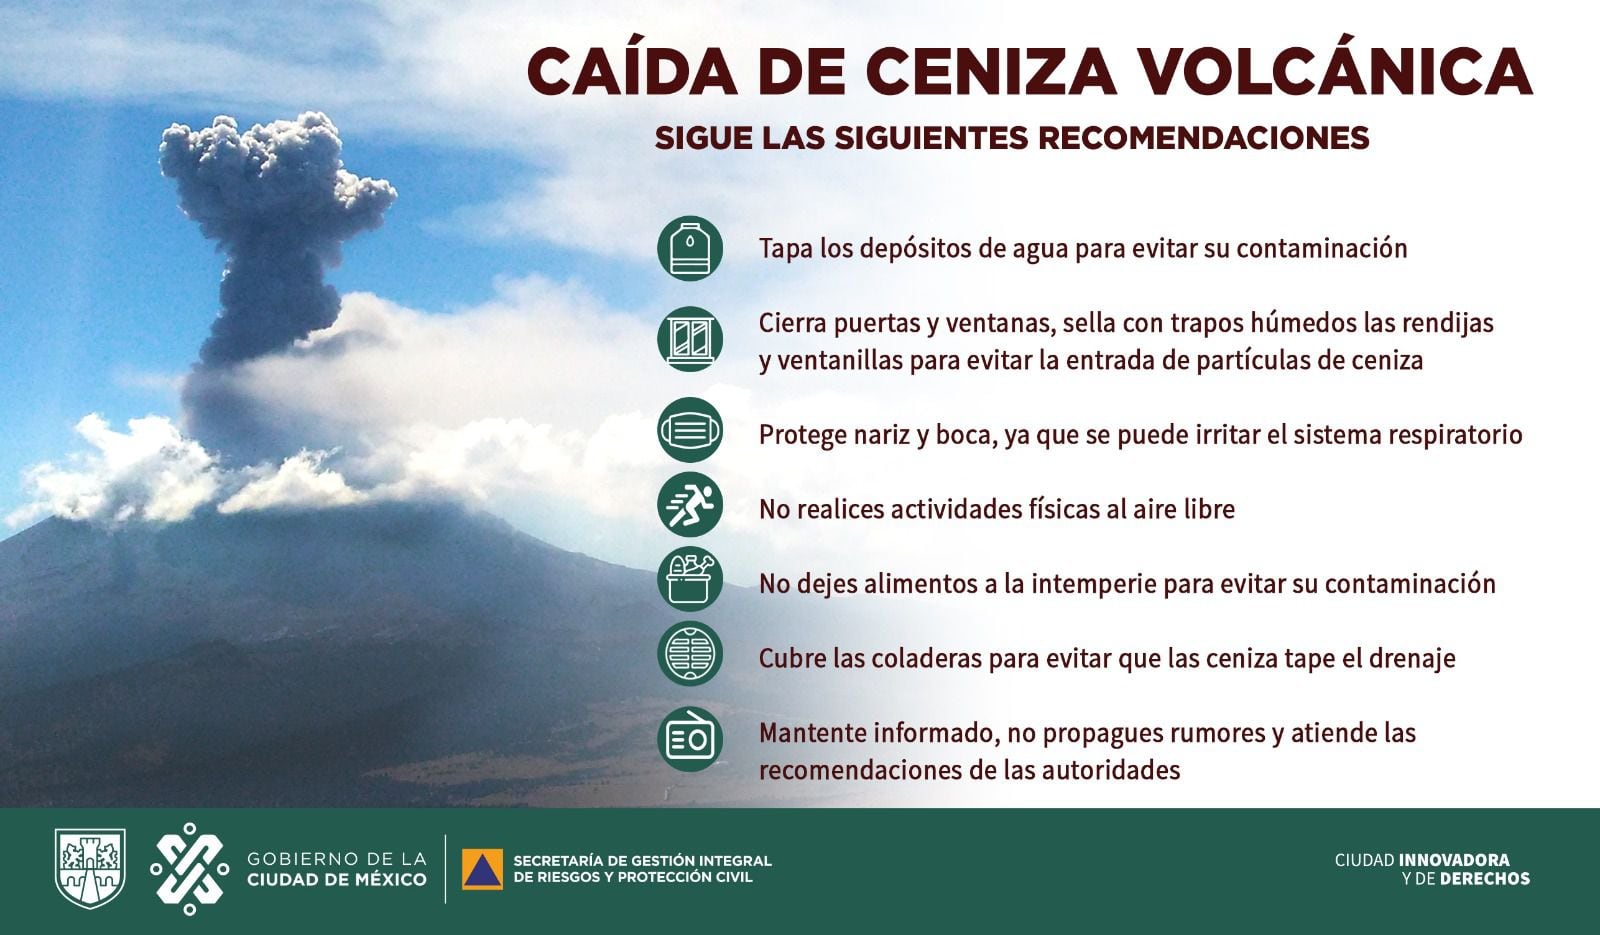 caída ceniza volcán Popocatépetl